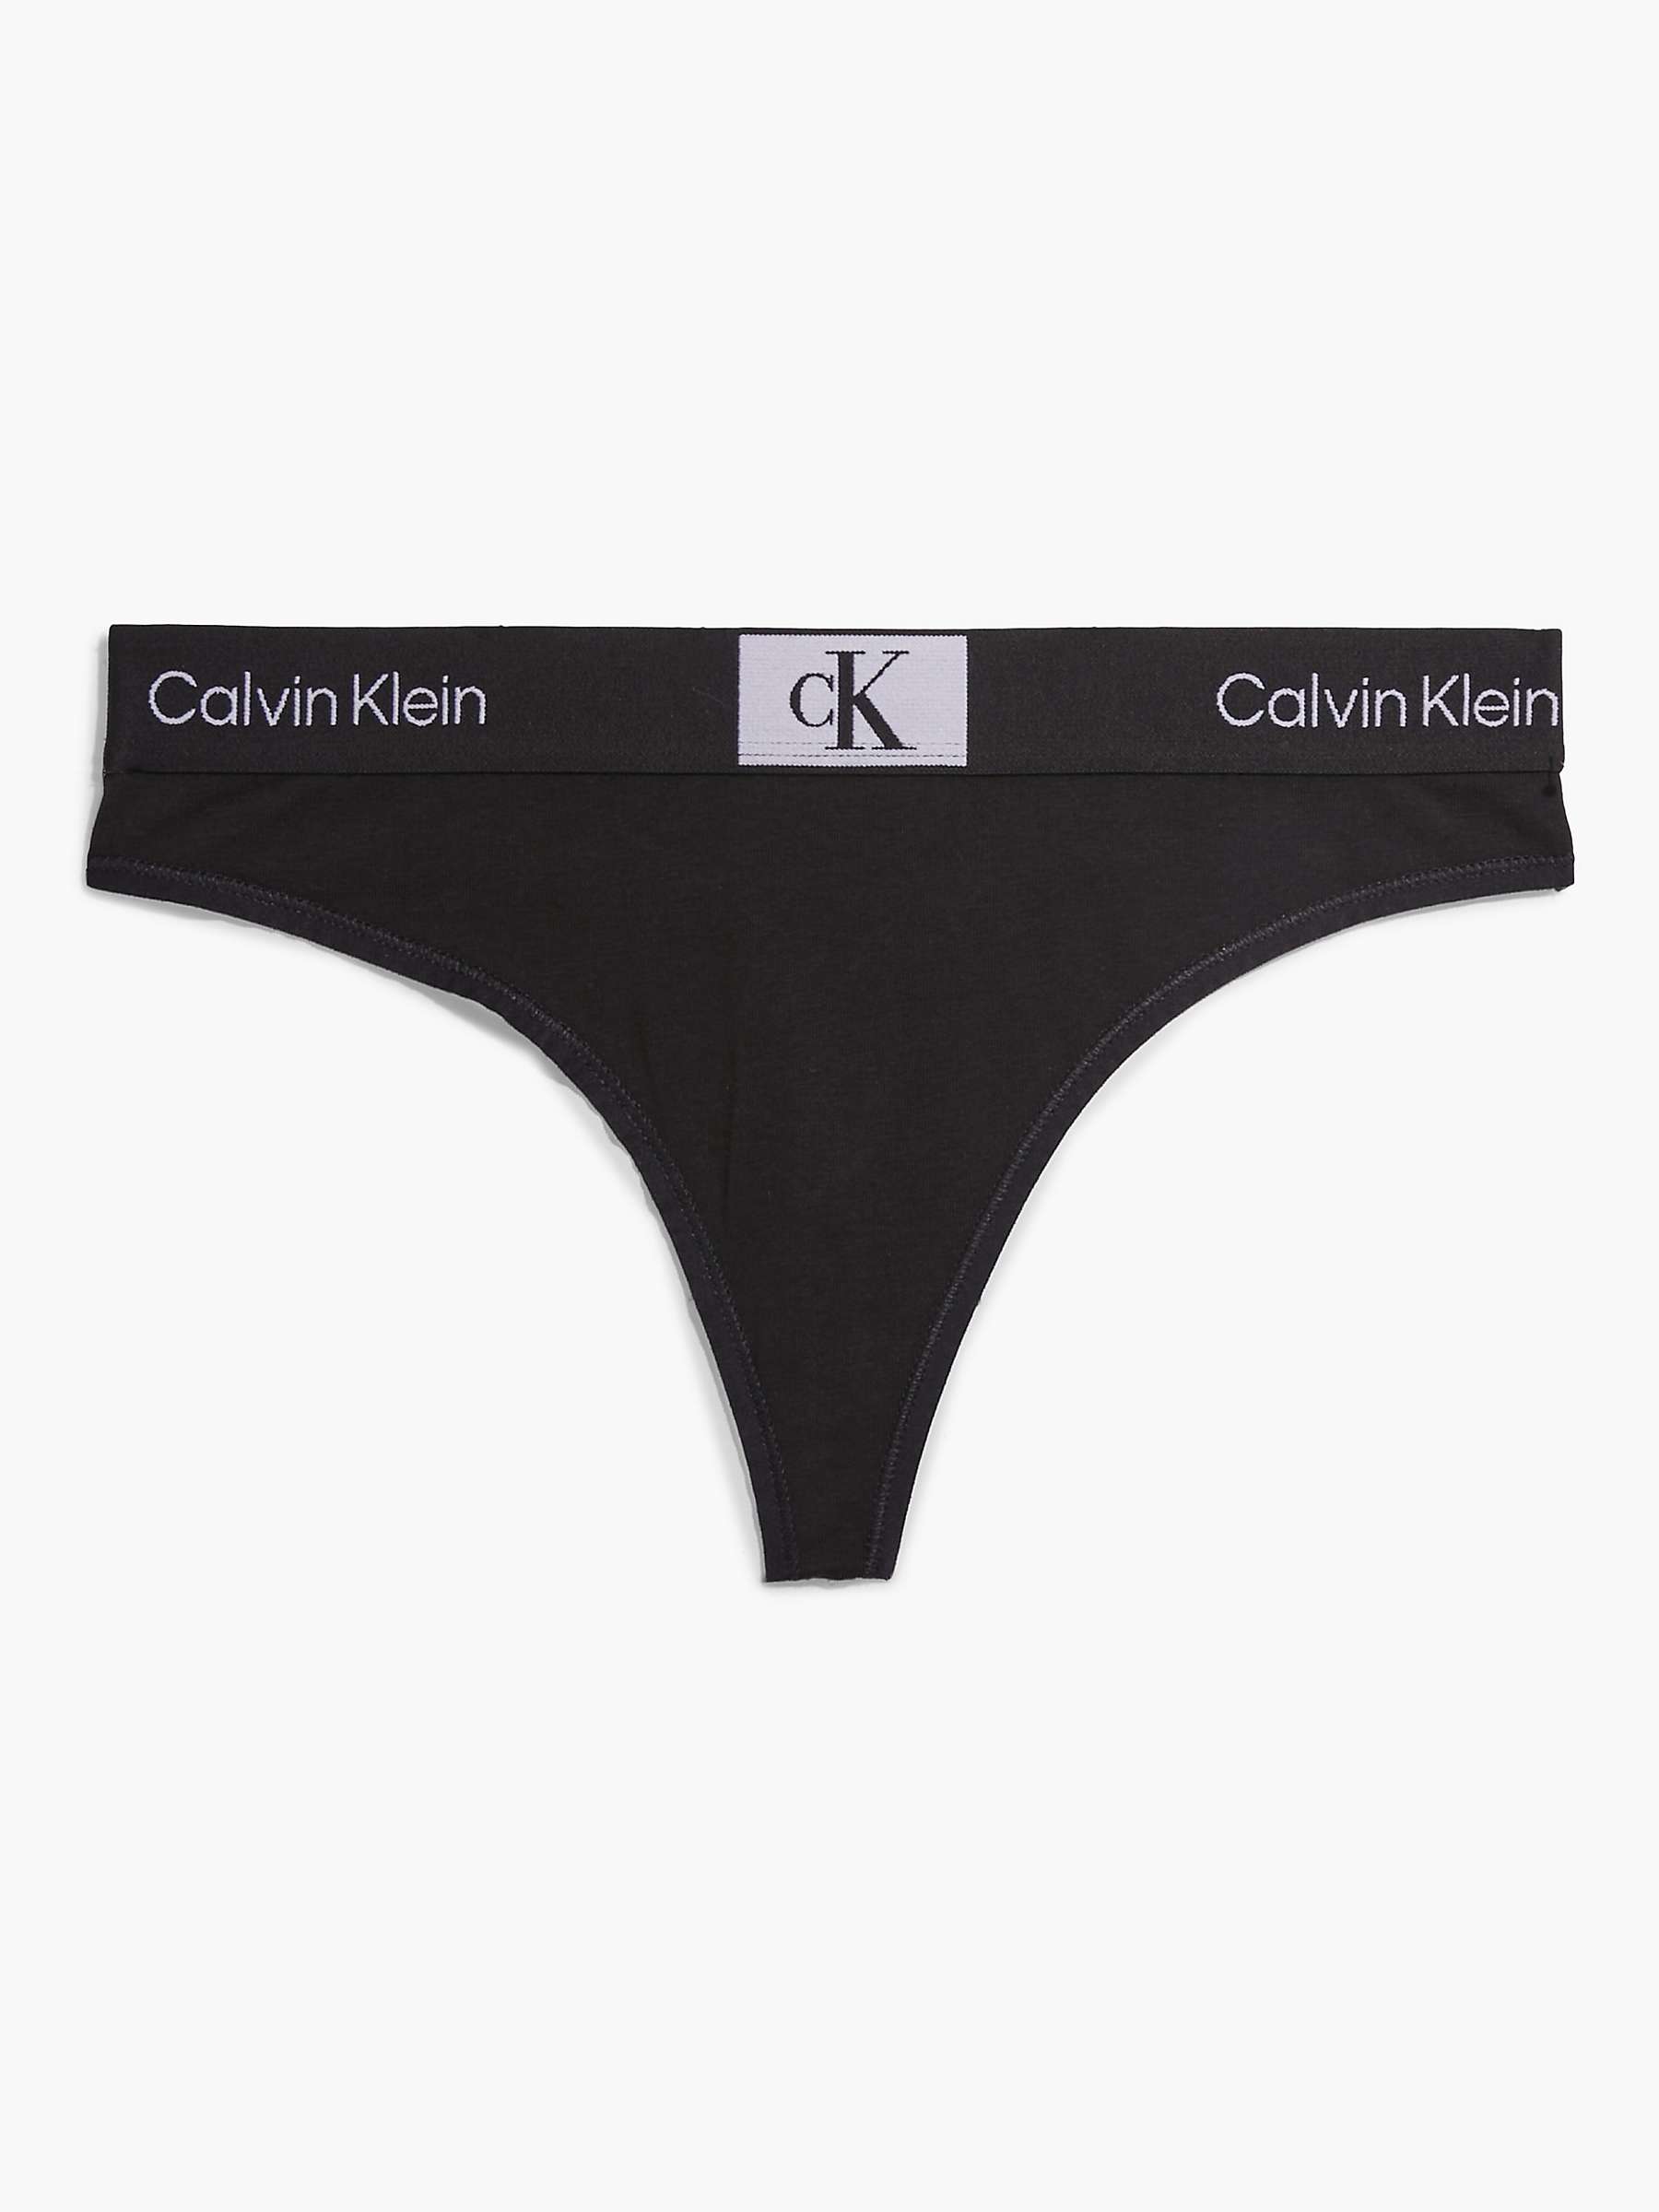 Buy Calvin Klein 1996 Thong, Black Online at johnlewis.com